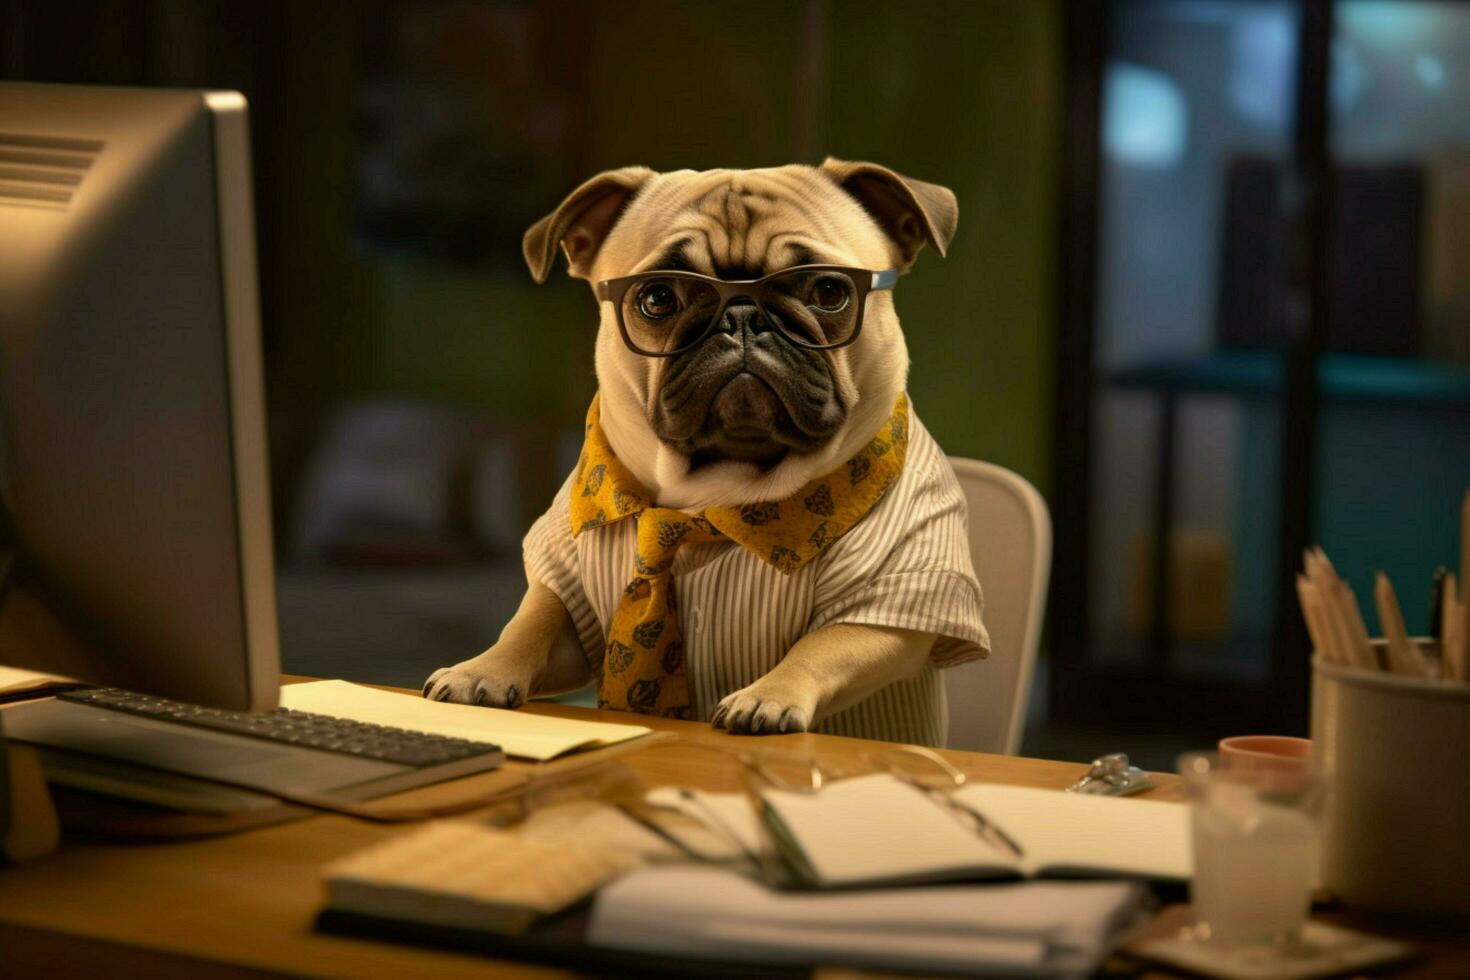 een hond vervelend bril zit Bij een bureau met een computer foto